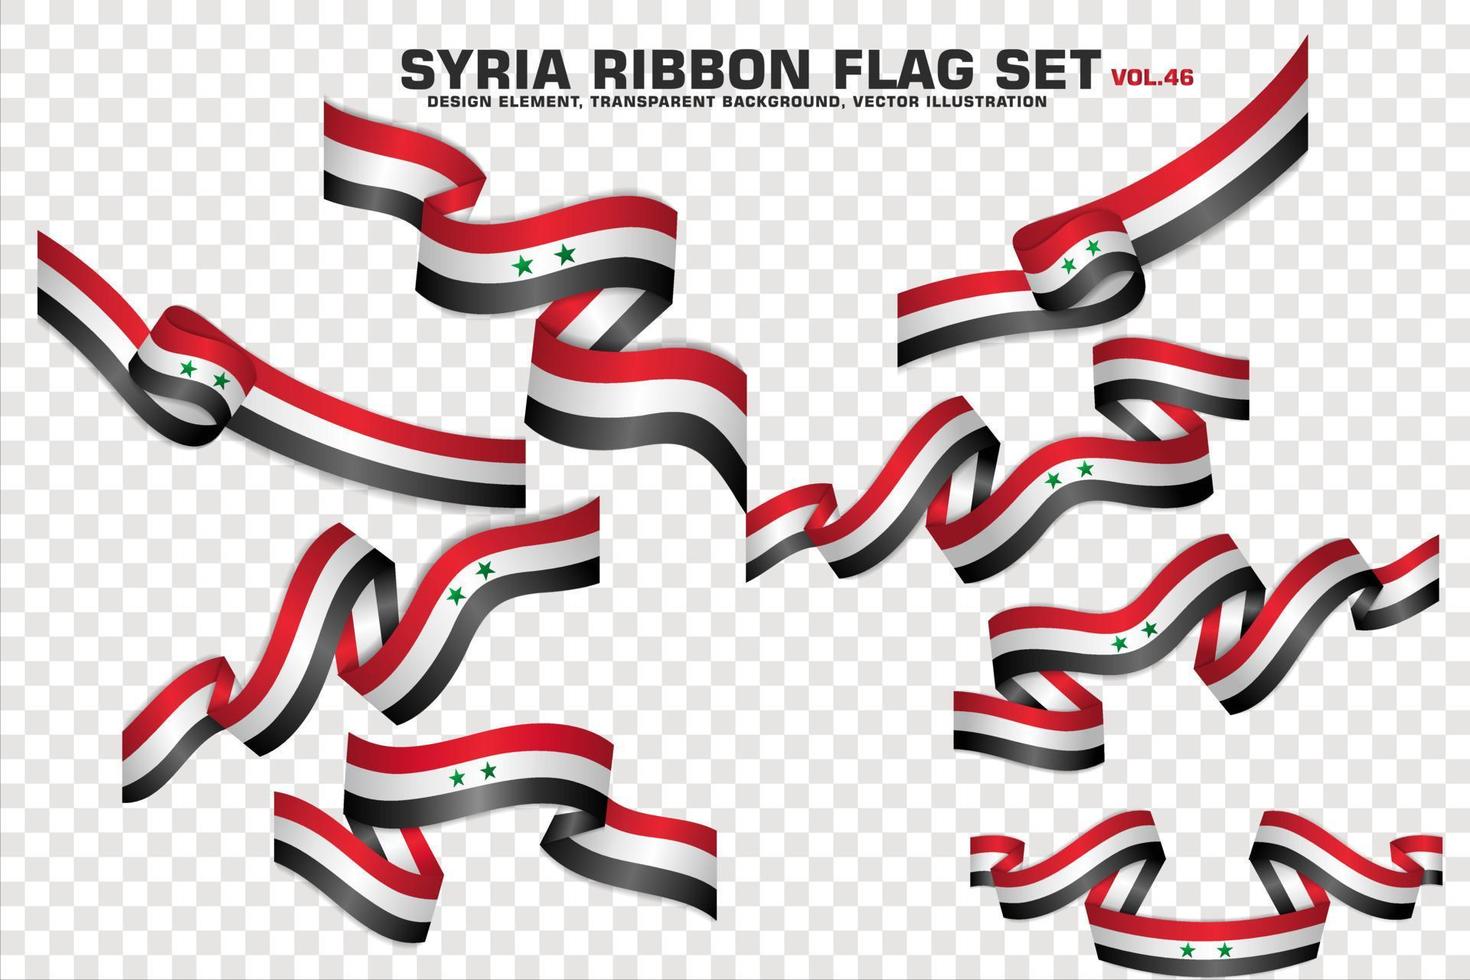 syrien bandflaggen gesetzt, elementdesign, 3d-stil. Vektor-Illustration vektor